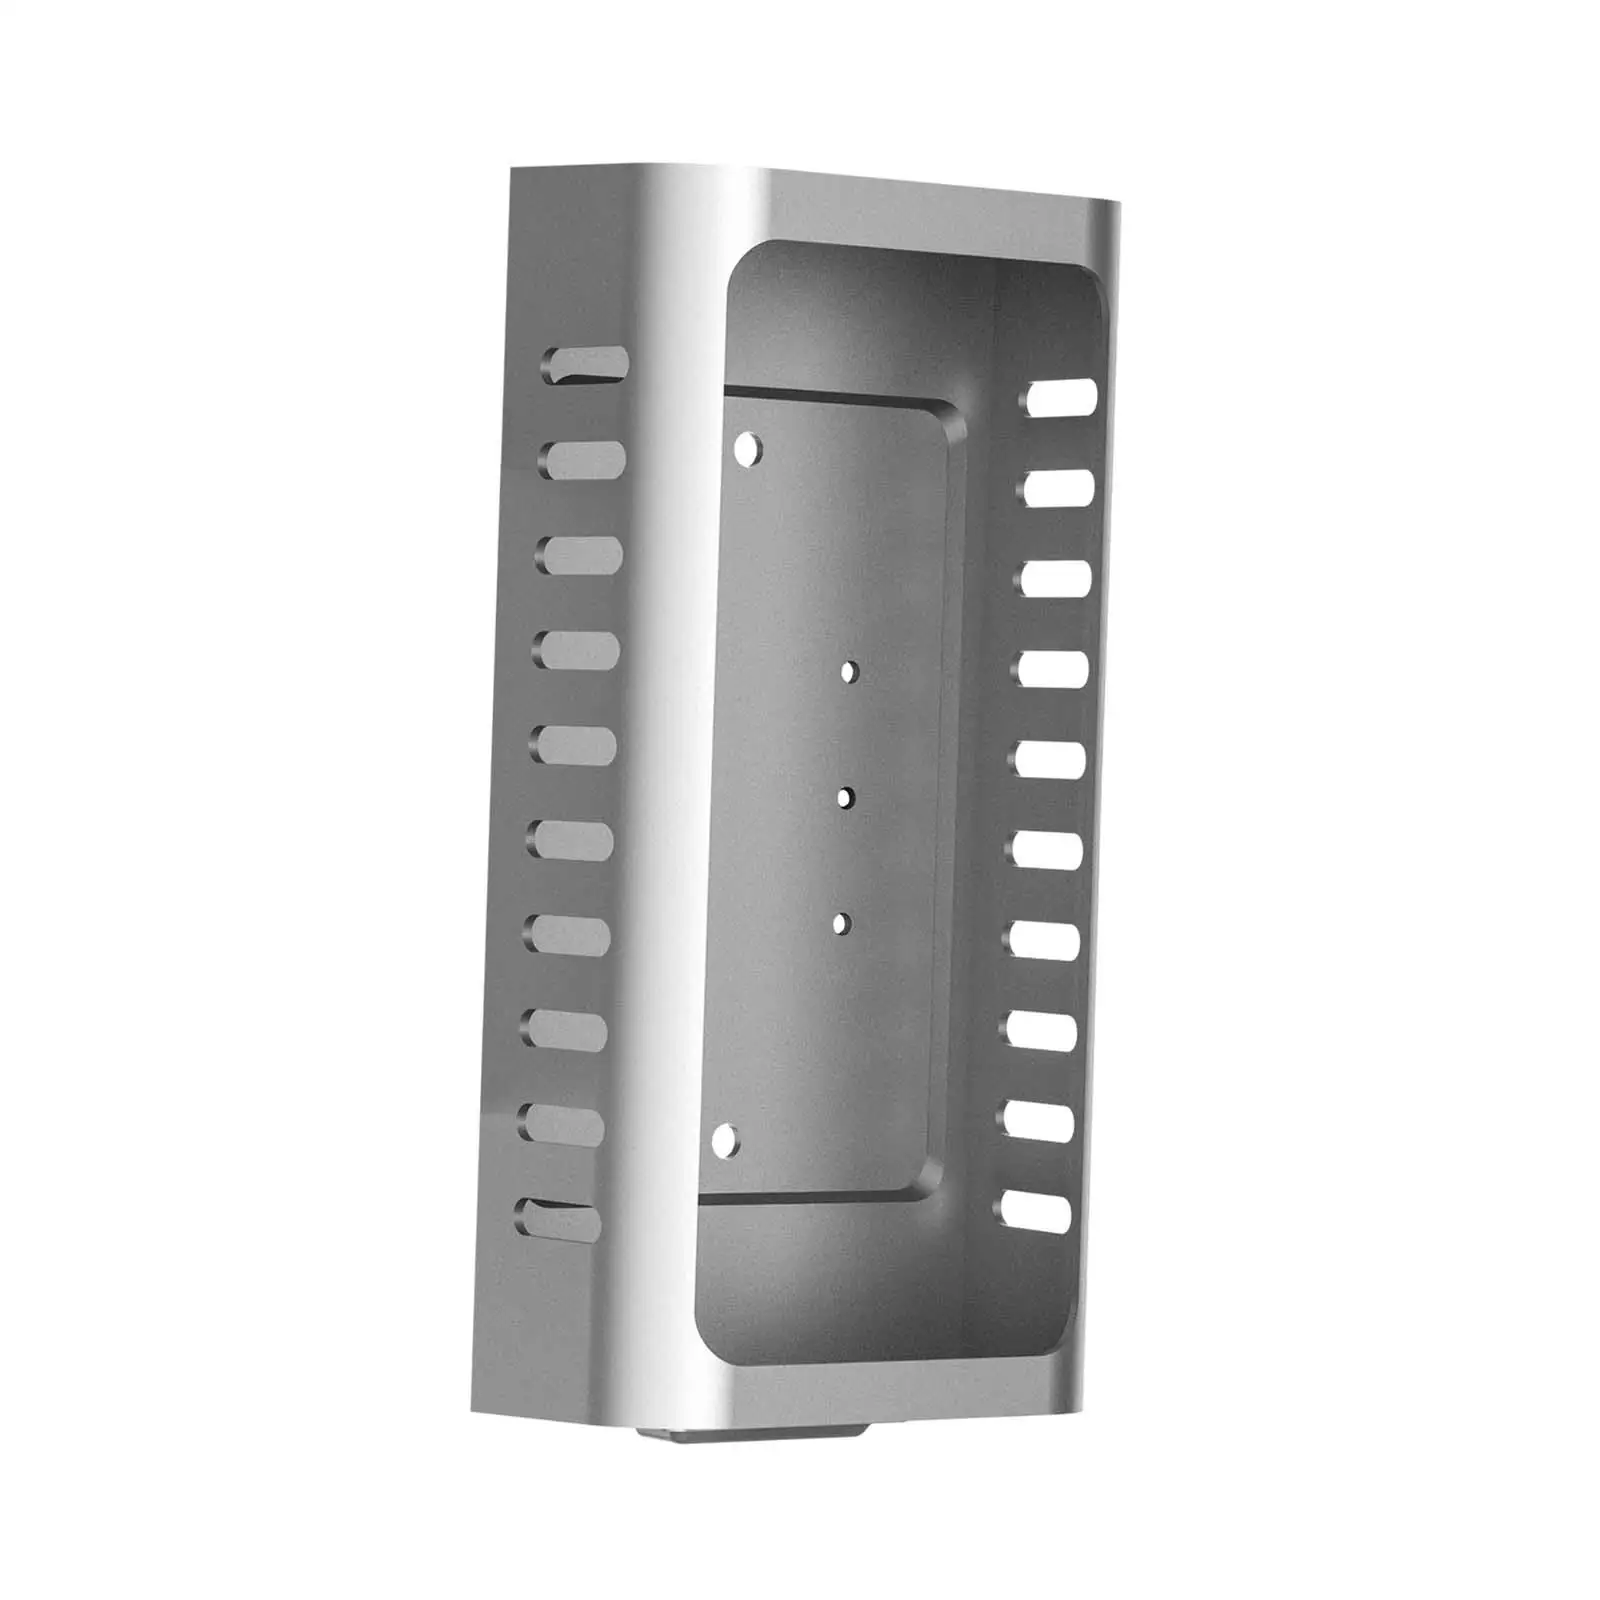 Sturdy Doorbell Mount Replace 45 Adjustable Video Doorbell Bracket Doorbell Holder Cover for Video Doorbell 1/2/3/4 Renters